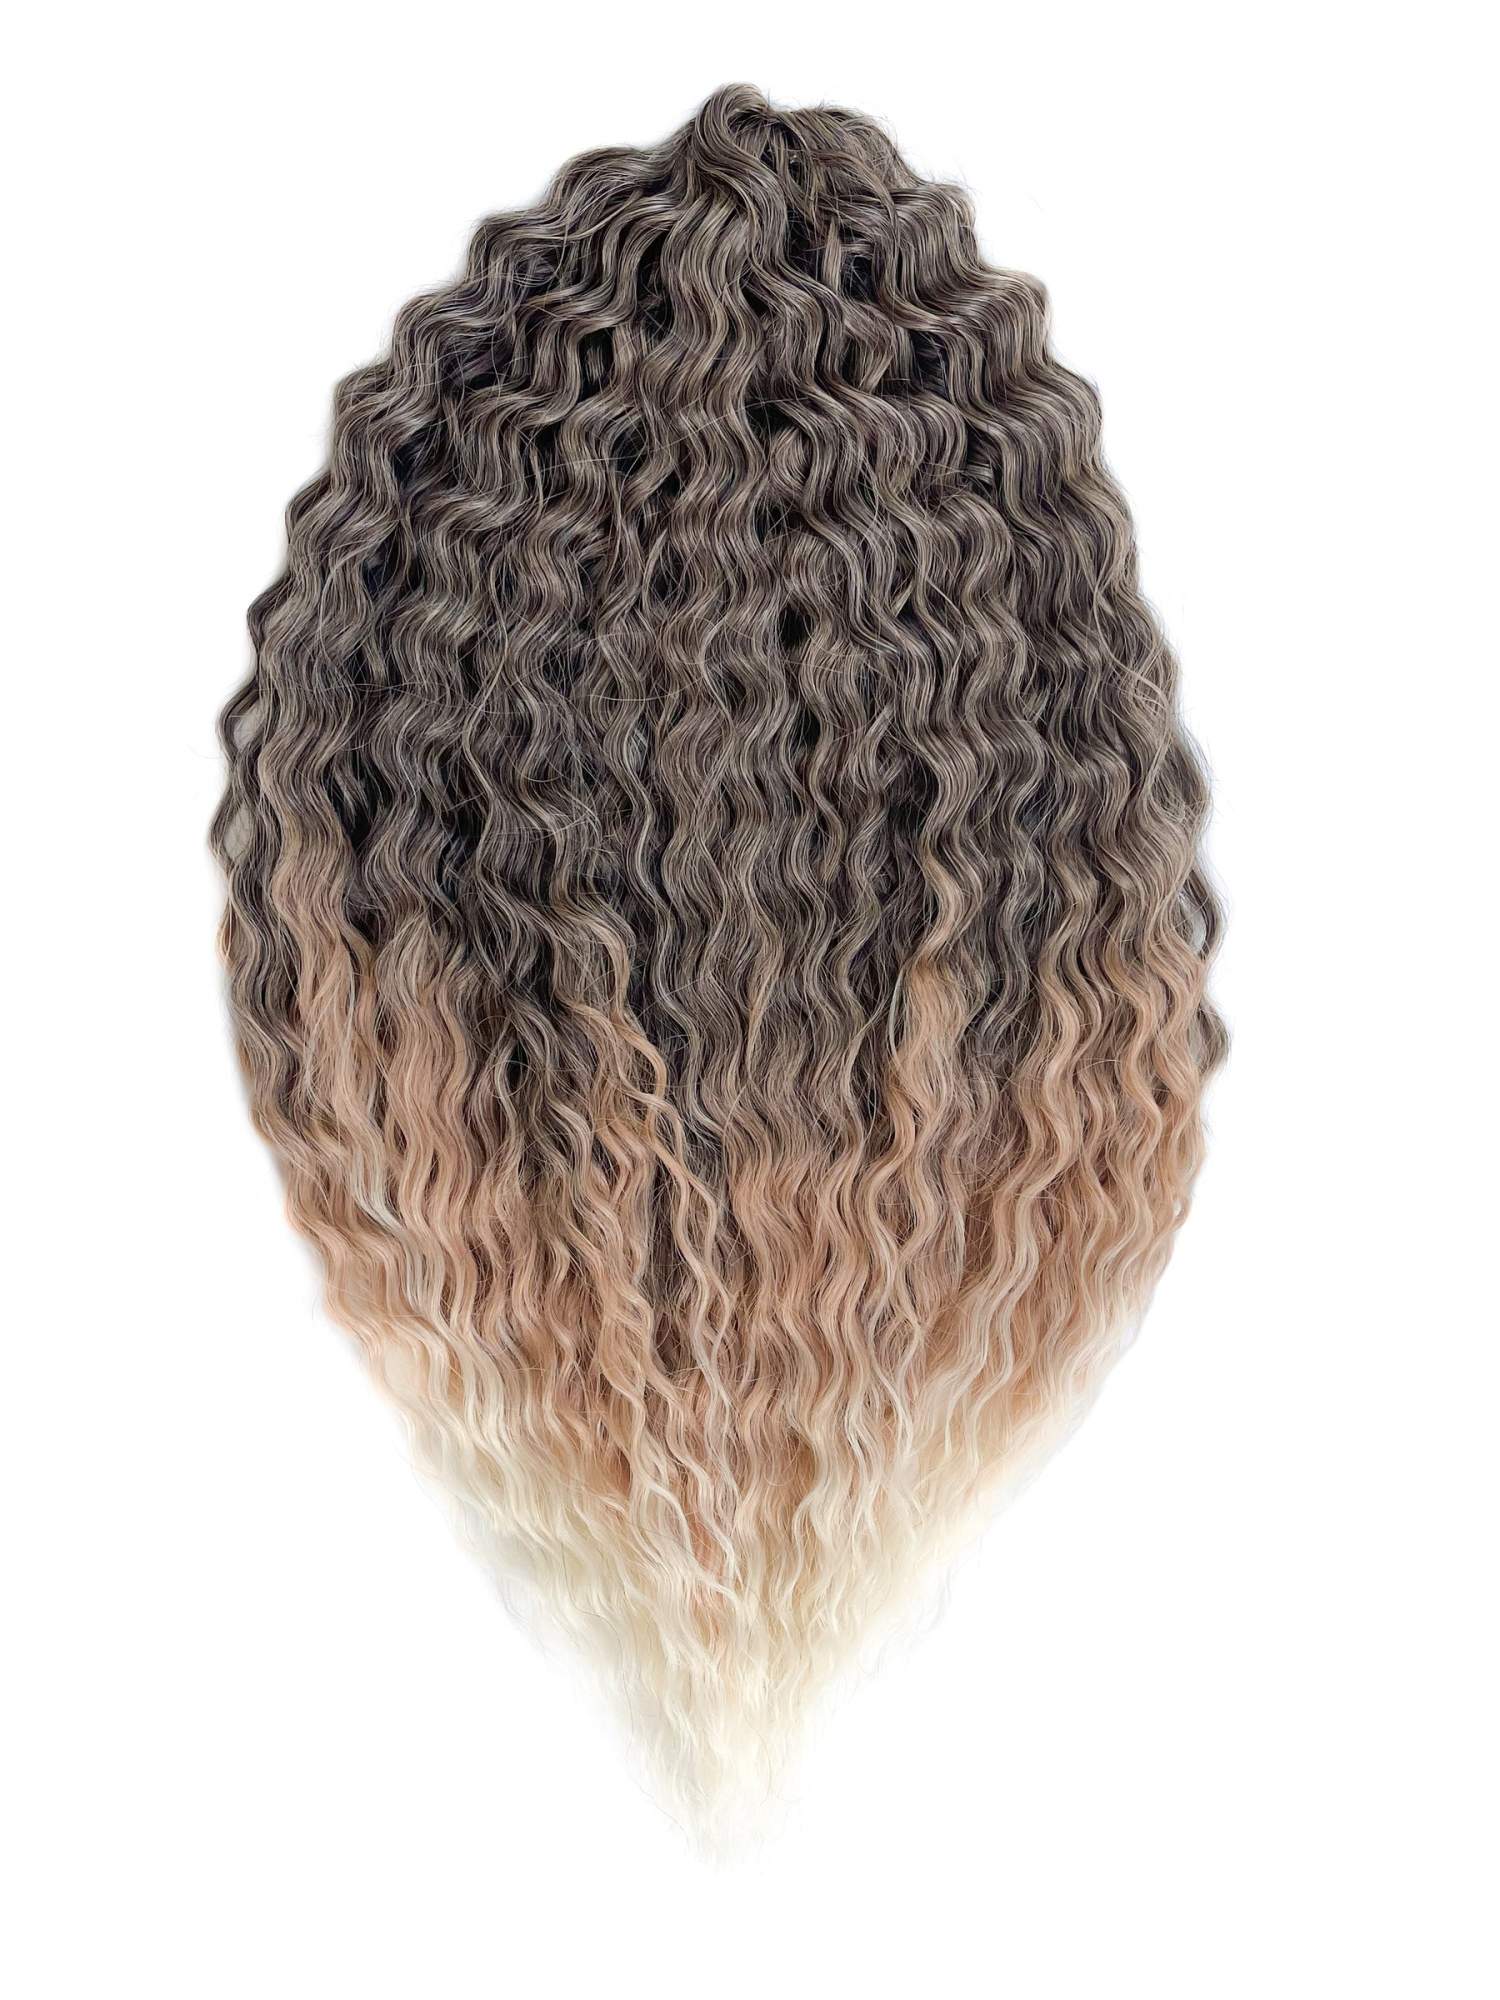 Афрокудри для плетения волос Ariel цвет T1b27 613 каштановый длина 60см вес 300г